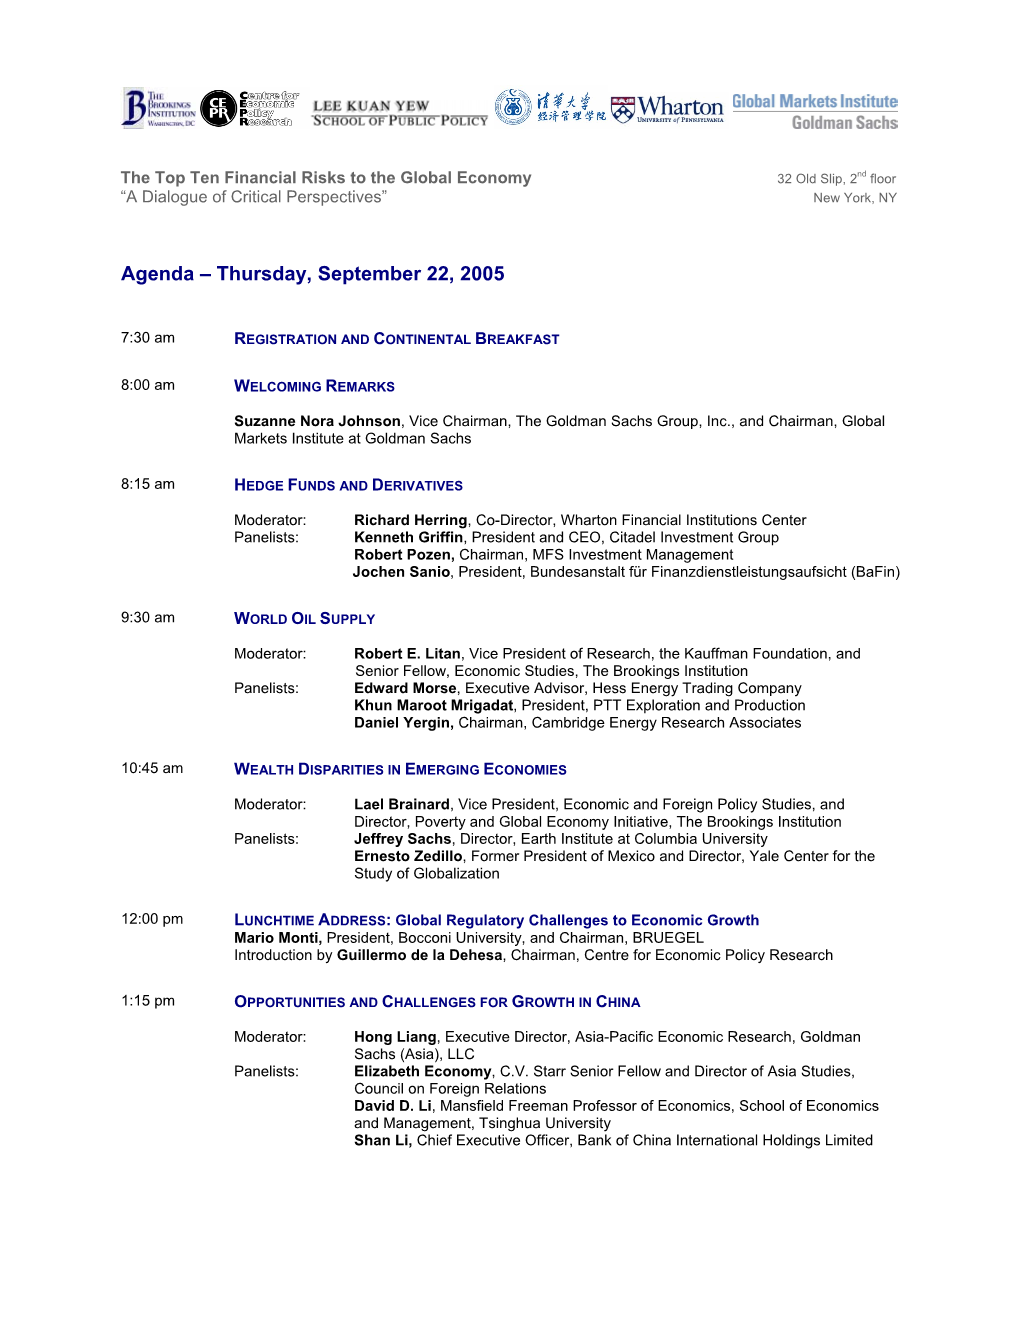 Agenda – Thursday, September 22, 2005